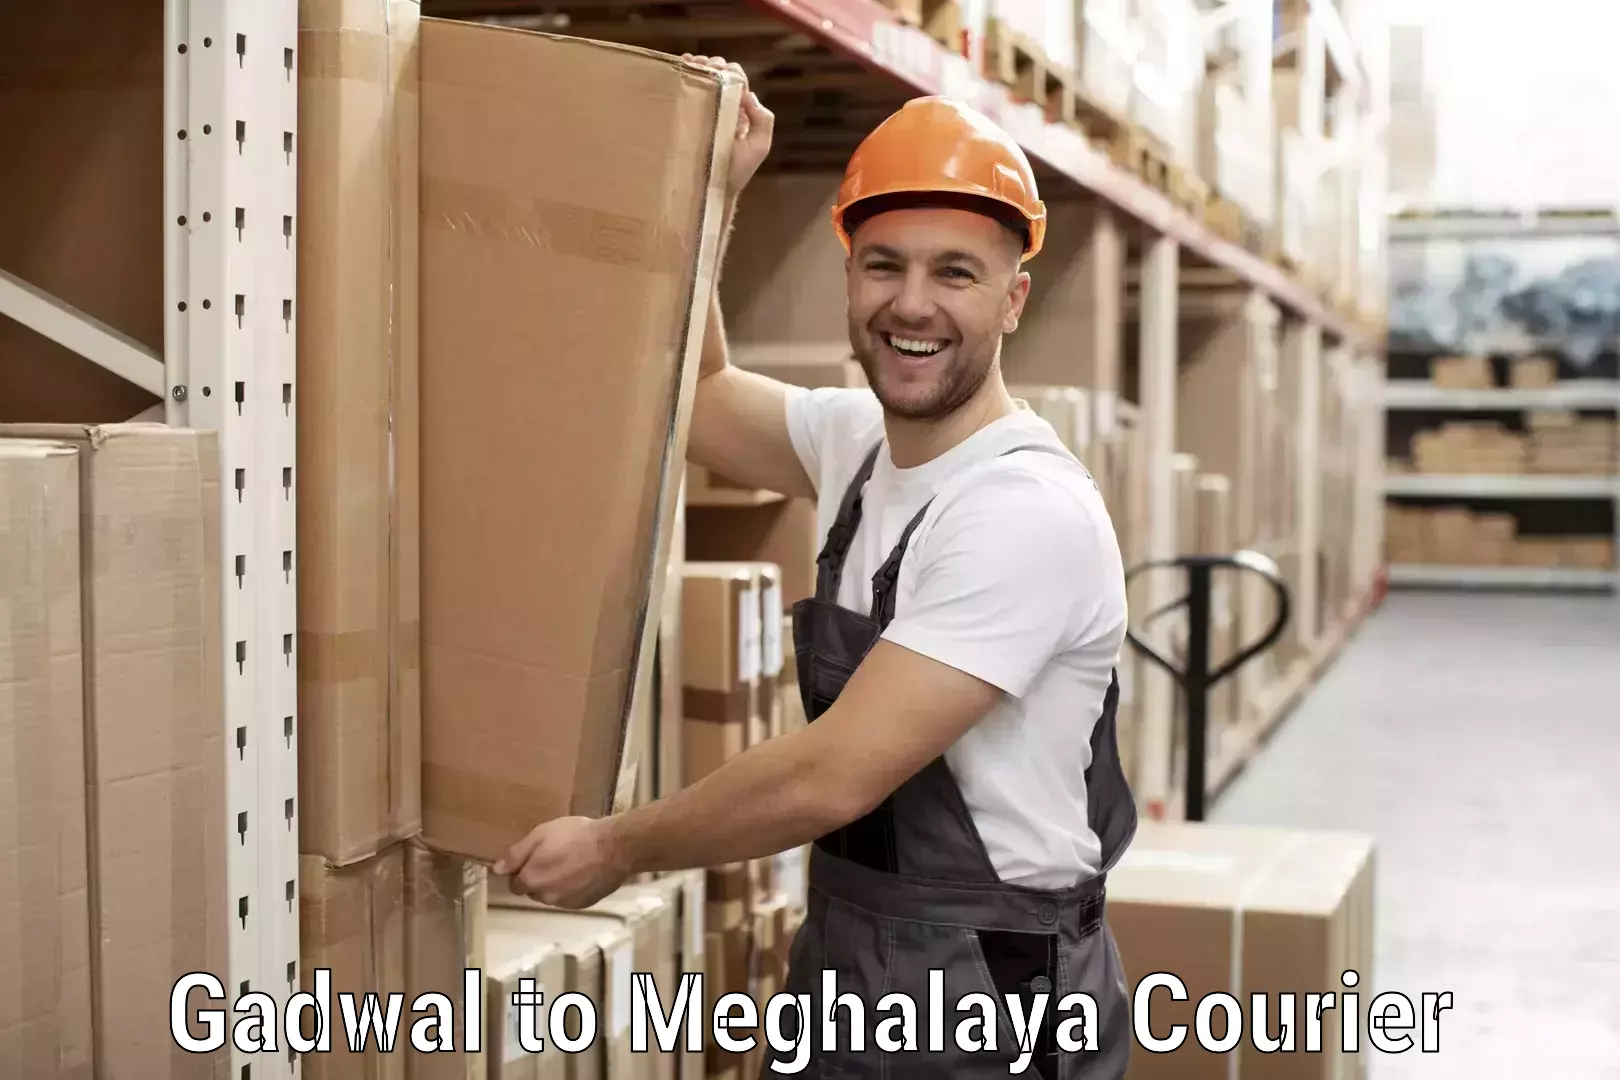 Courier service comparison Gadwal to Shillong